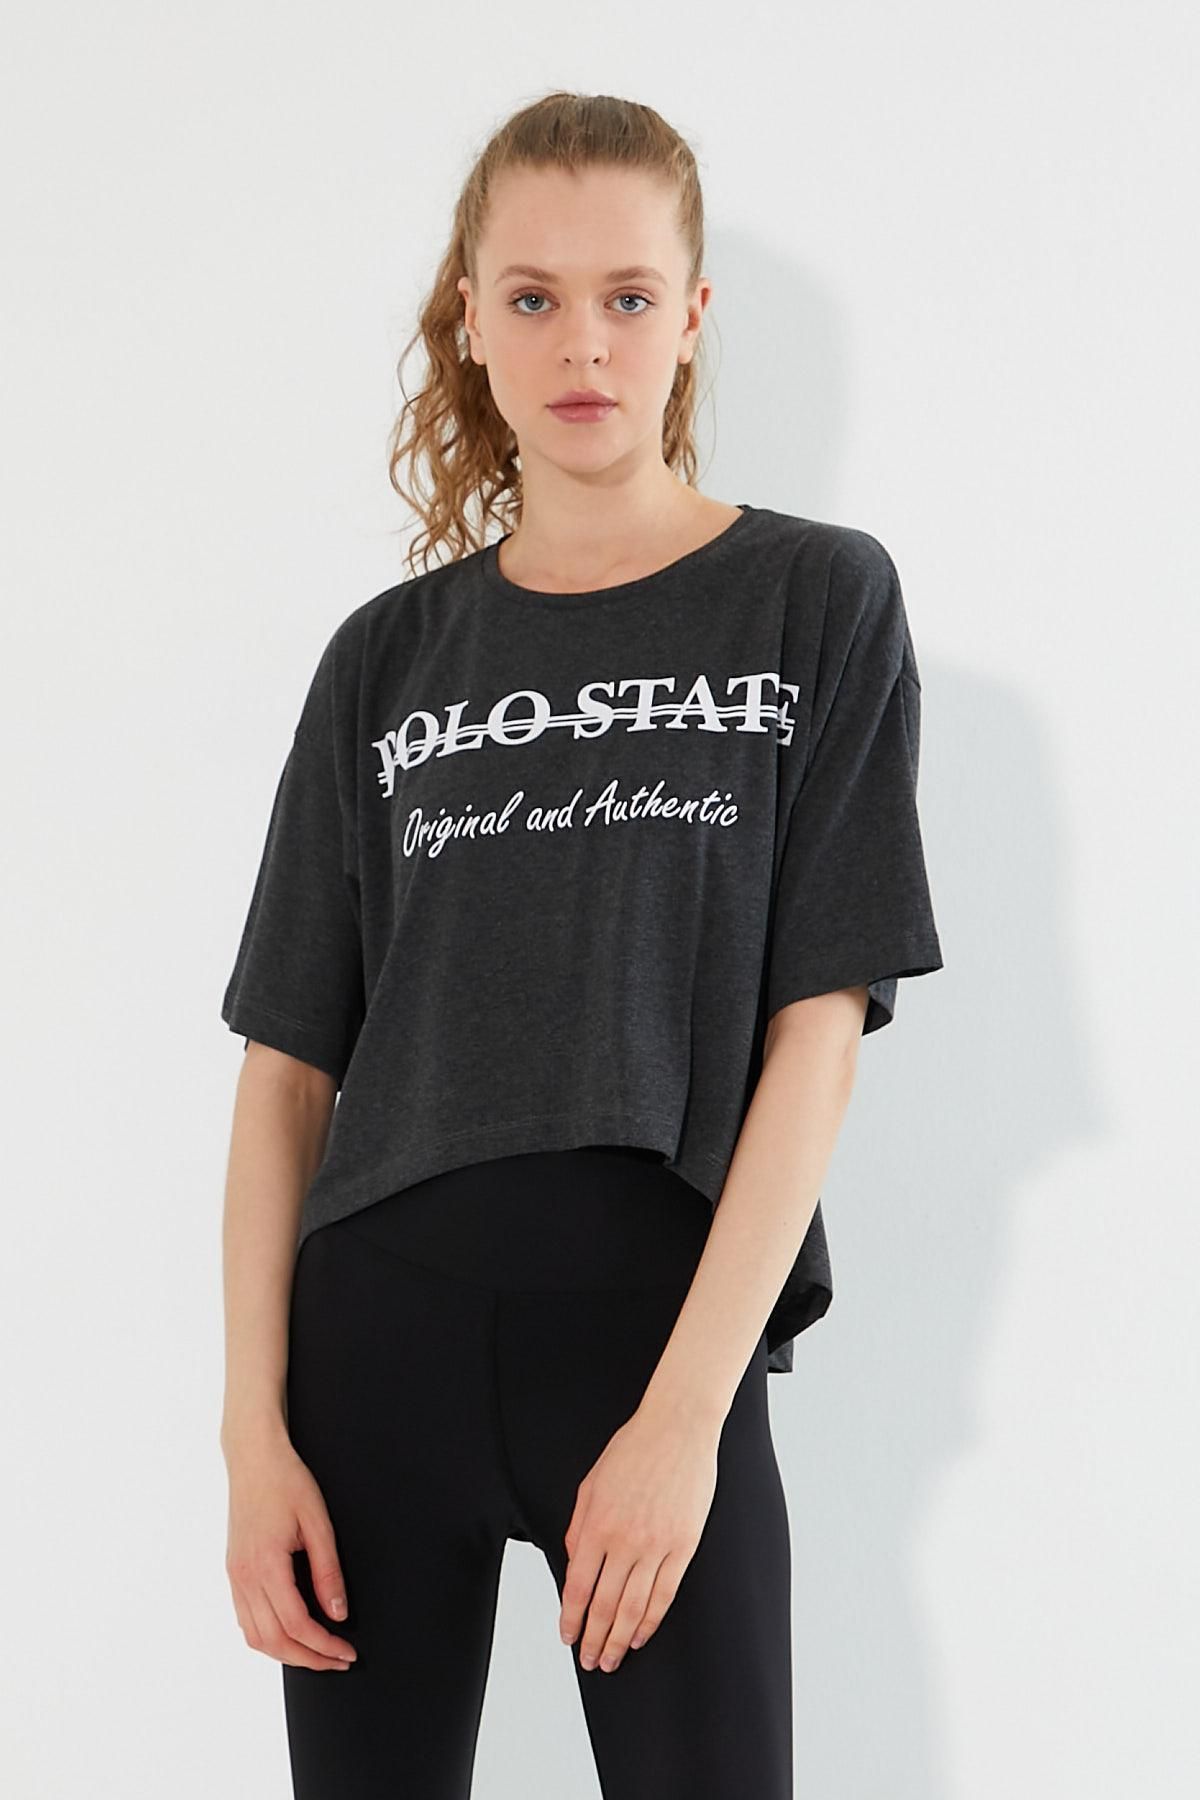 Polo State Kadın Baskılı Oversize T-shirt Antrasit